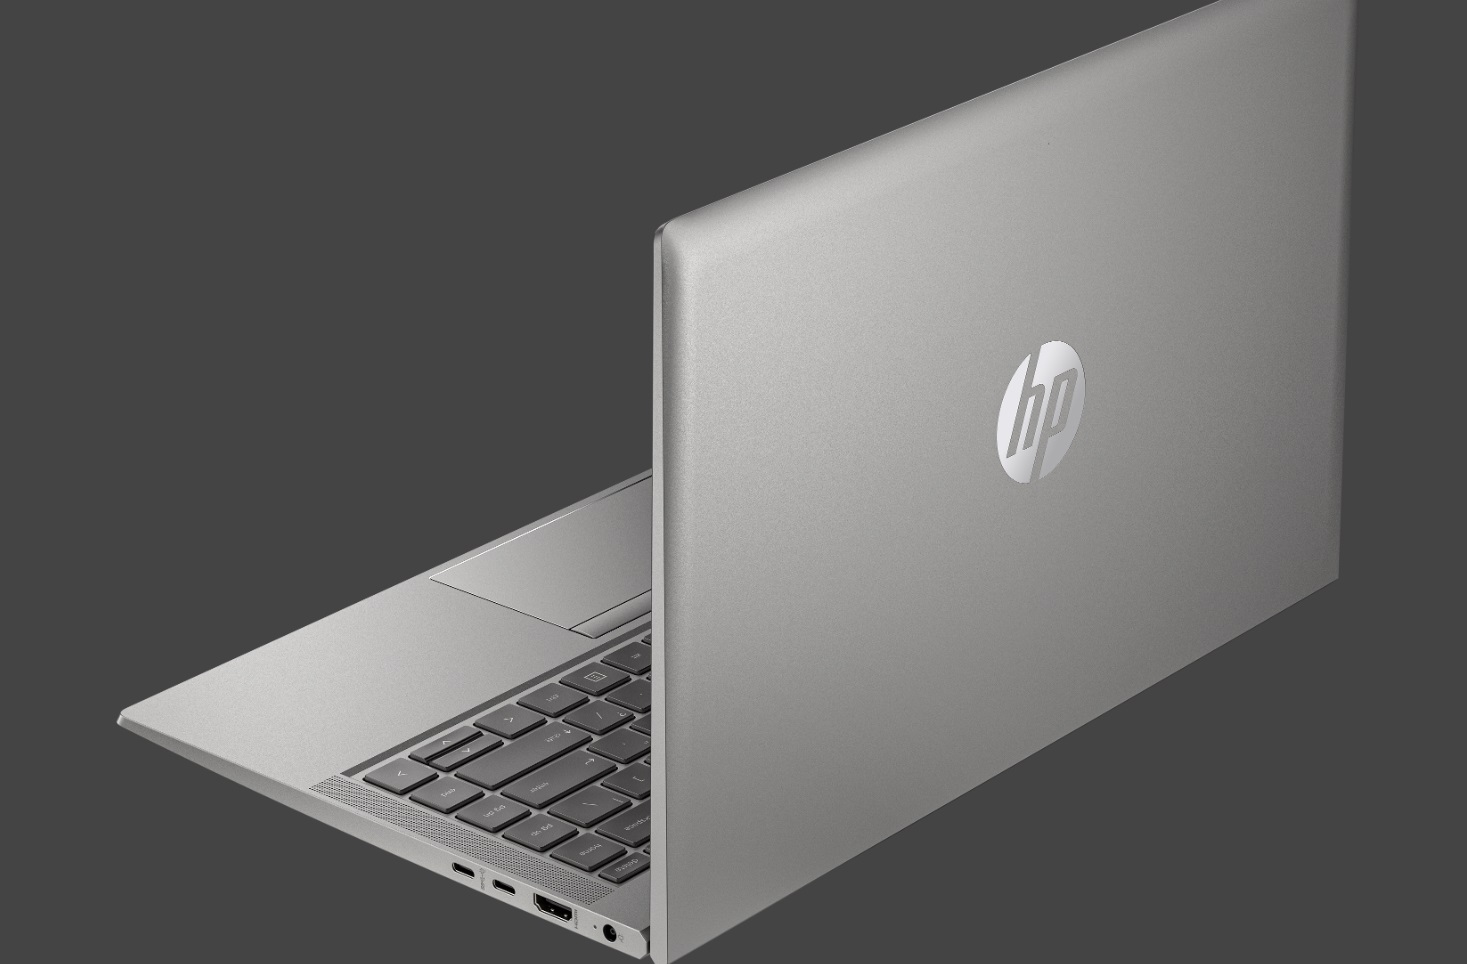 HP incluye tapa antiespionaje en sus nuevos portátiles